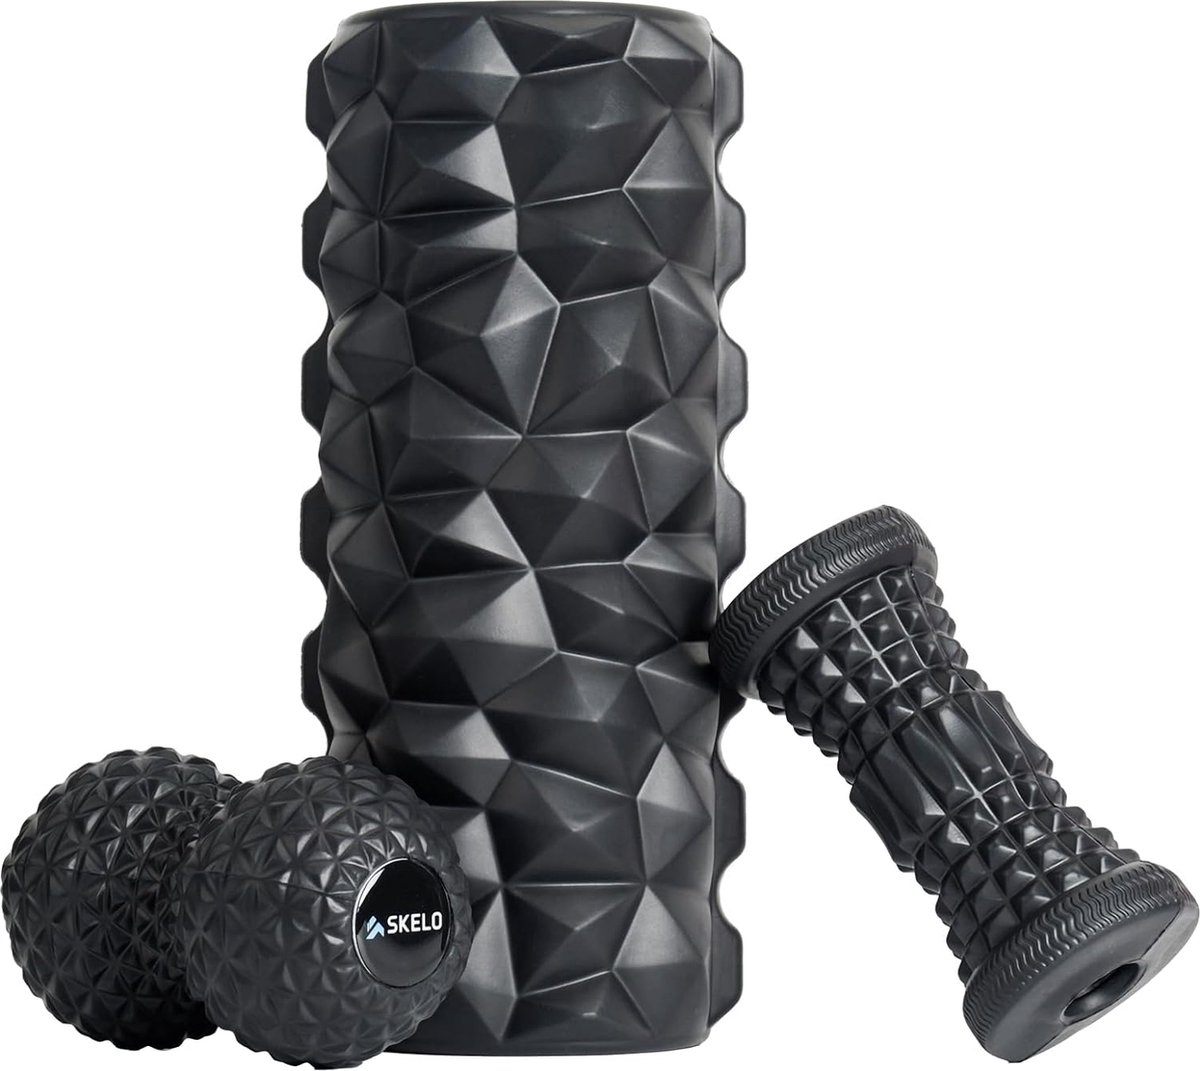 Fasciarol, fasciarollenset met fasciarol met 3D-textuurmassage/fasciarol klein/fasciabal, EVA-schuimroller voor yoga, pilates, diepe spiermassage (zwart)